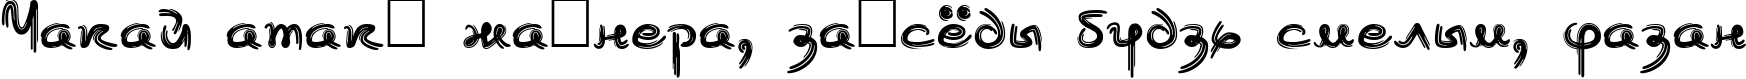 Пример написания шрифтом Burlak текста на белорусском